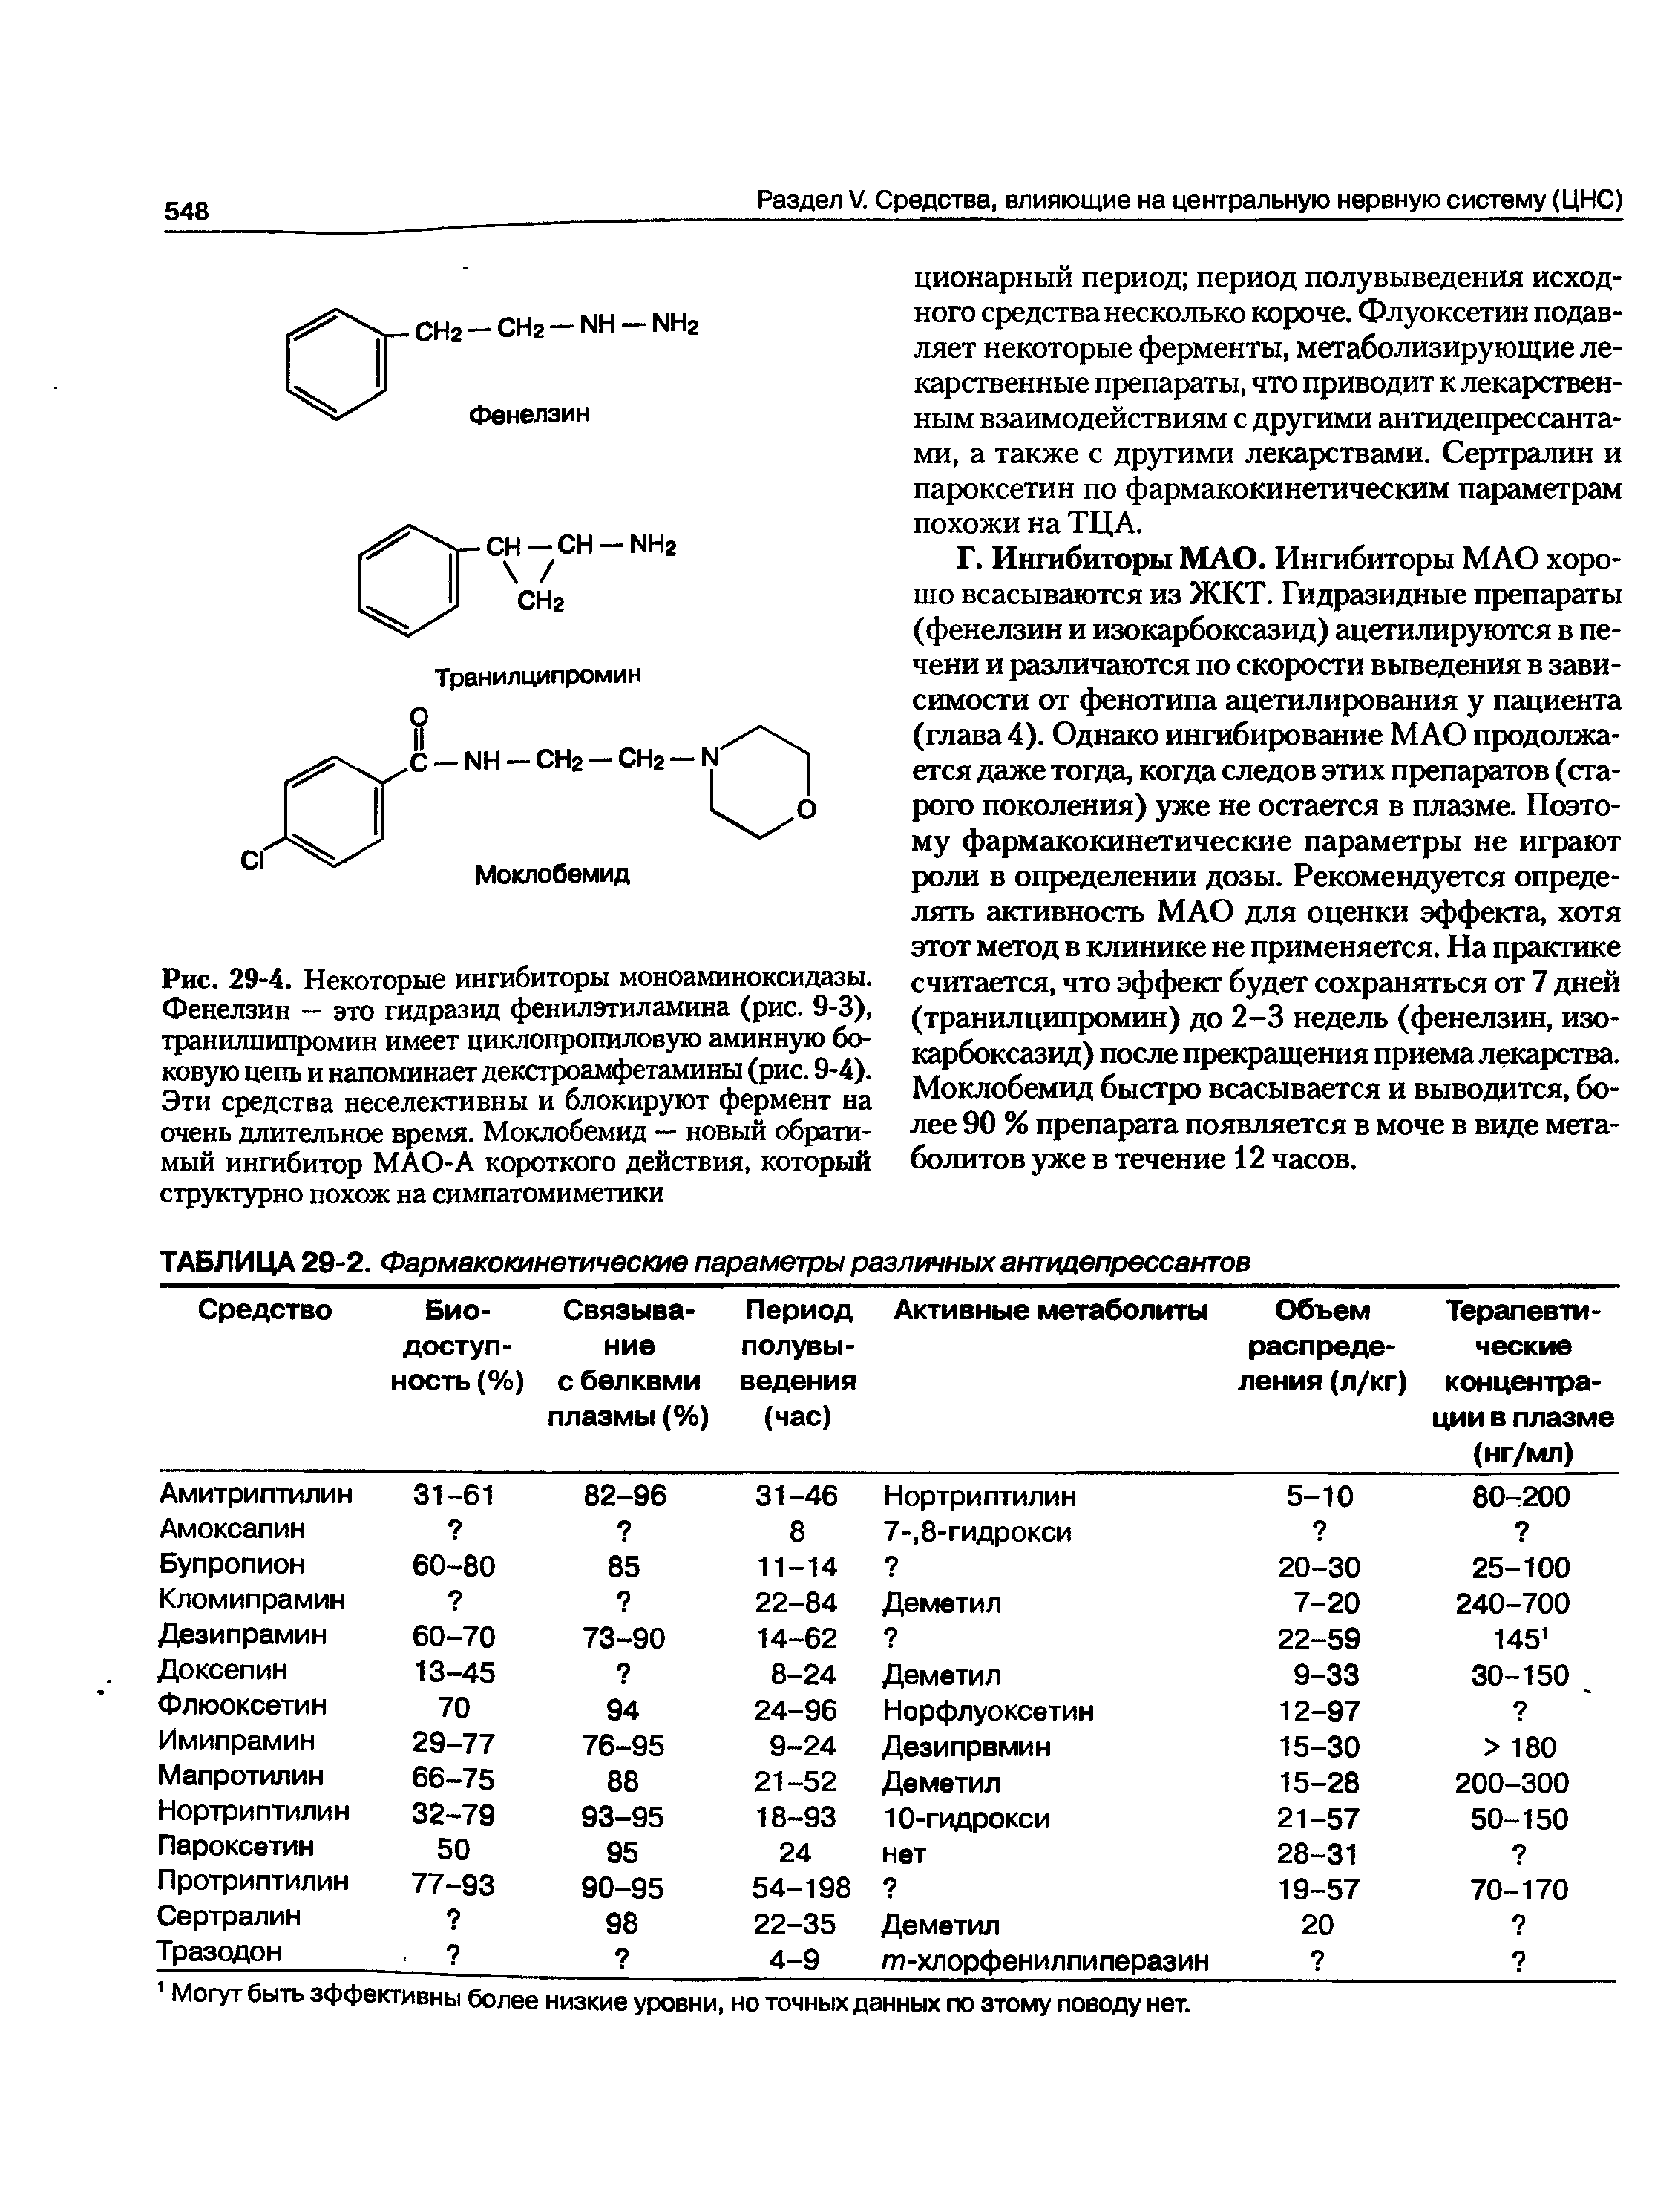 Рис. 29-4. Некоторые ингибиторы моноаминоксидазы. Фенелзин - это гидразид фенилэтиламина (рис. 9-3), транилиипромин имеет циклопропиловую аминную боковую цепь и напоминает декстроамфетамины (рис. 9-4). Эти средства неселективны и блокируют фермент на очень длительное время. Моклобемид — новый обратимый ингибитор МАО-А короткого действия, который структурно похож на симпатомиметики...